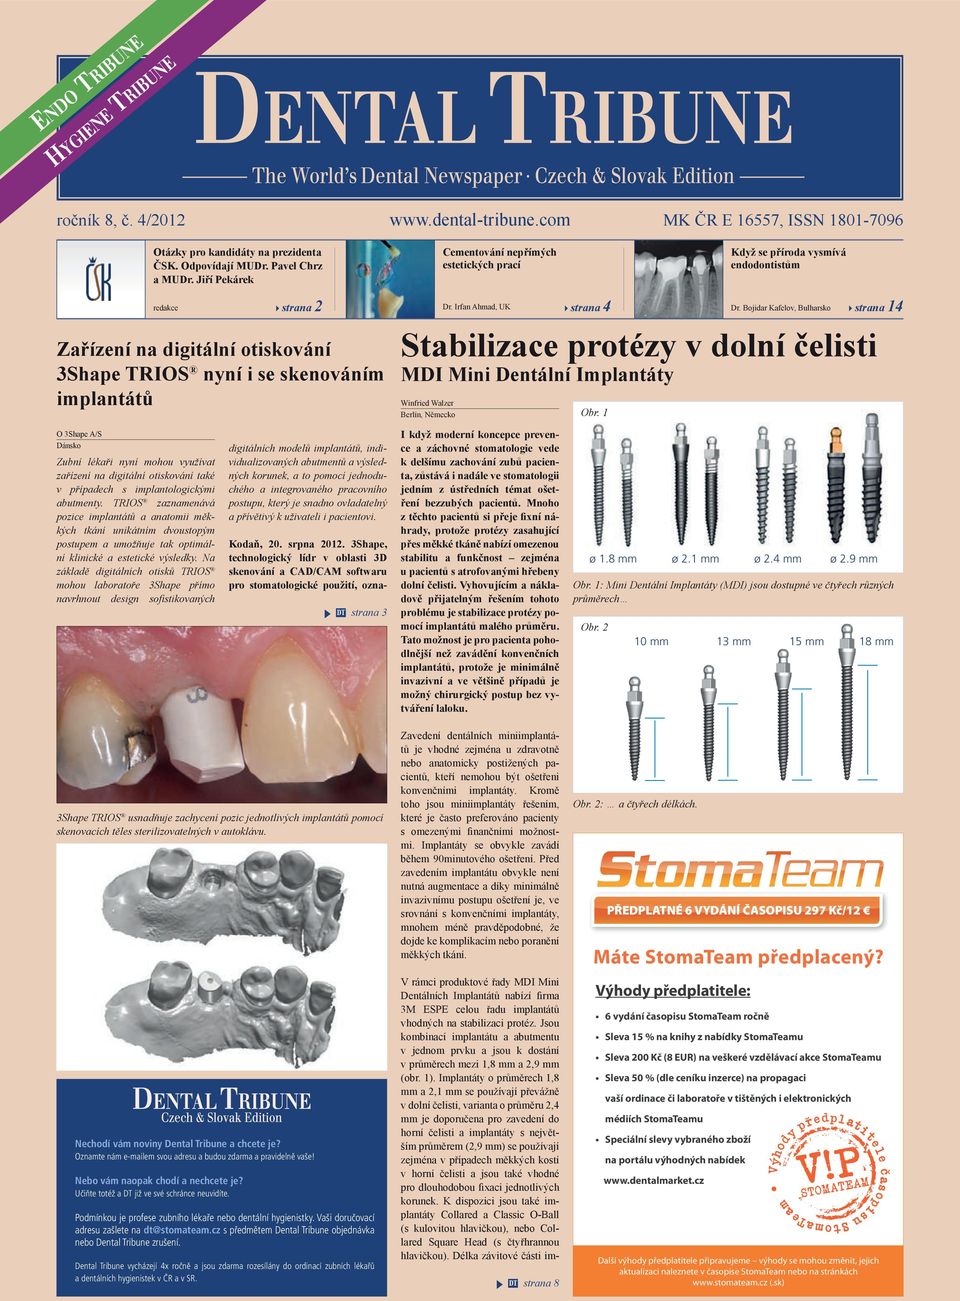 Irfan Ahmad, UK strana 4 Dr. Bojidar Kafelov, Bulharsko strana 14 Stabilizace protézy v dolní čelisti MDI Mini Dentální Implantáty Winfried Walzer Berlín, Německo Obr.